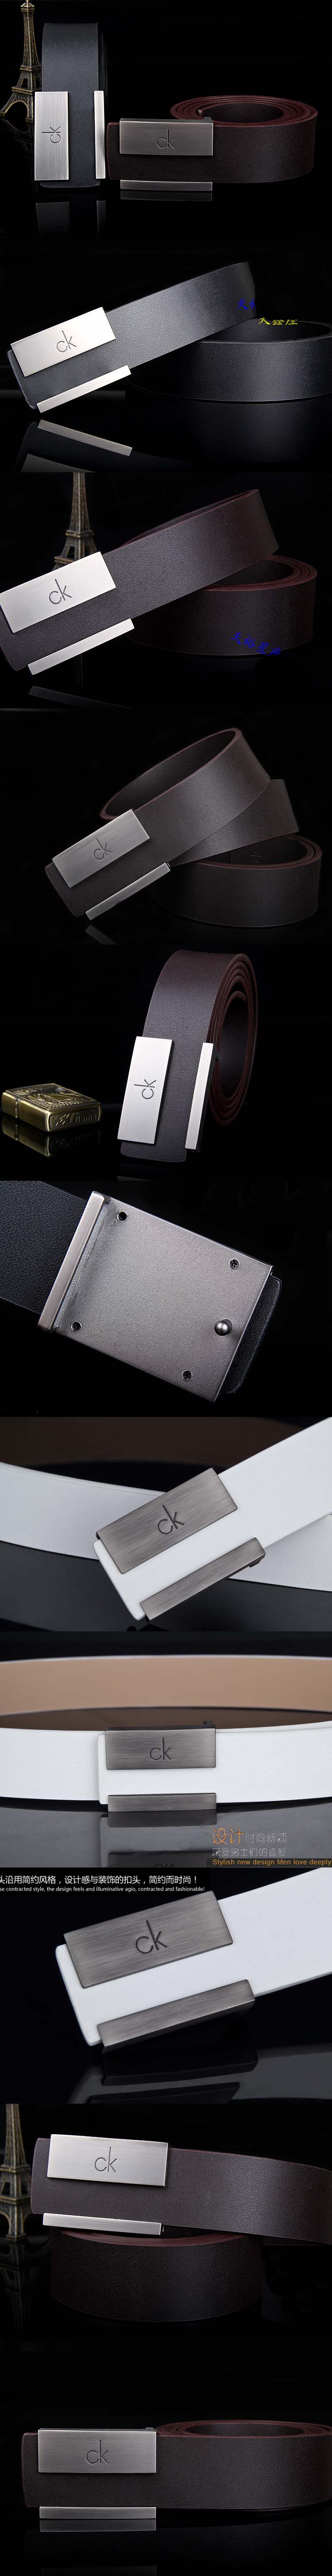 belt pria merk calvin klein terbuat dari bahan kulit import